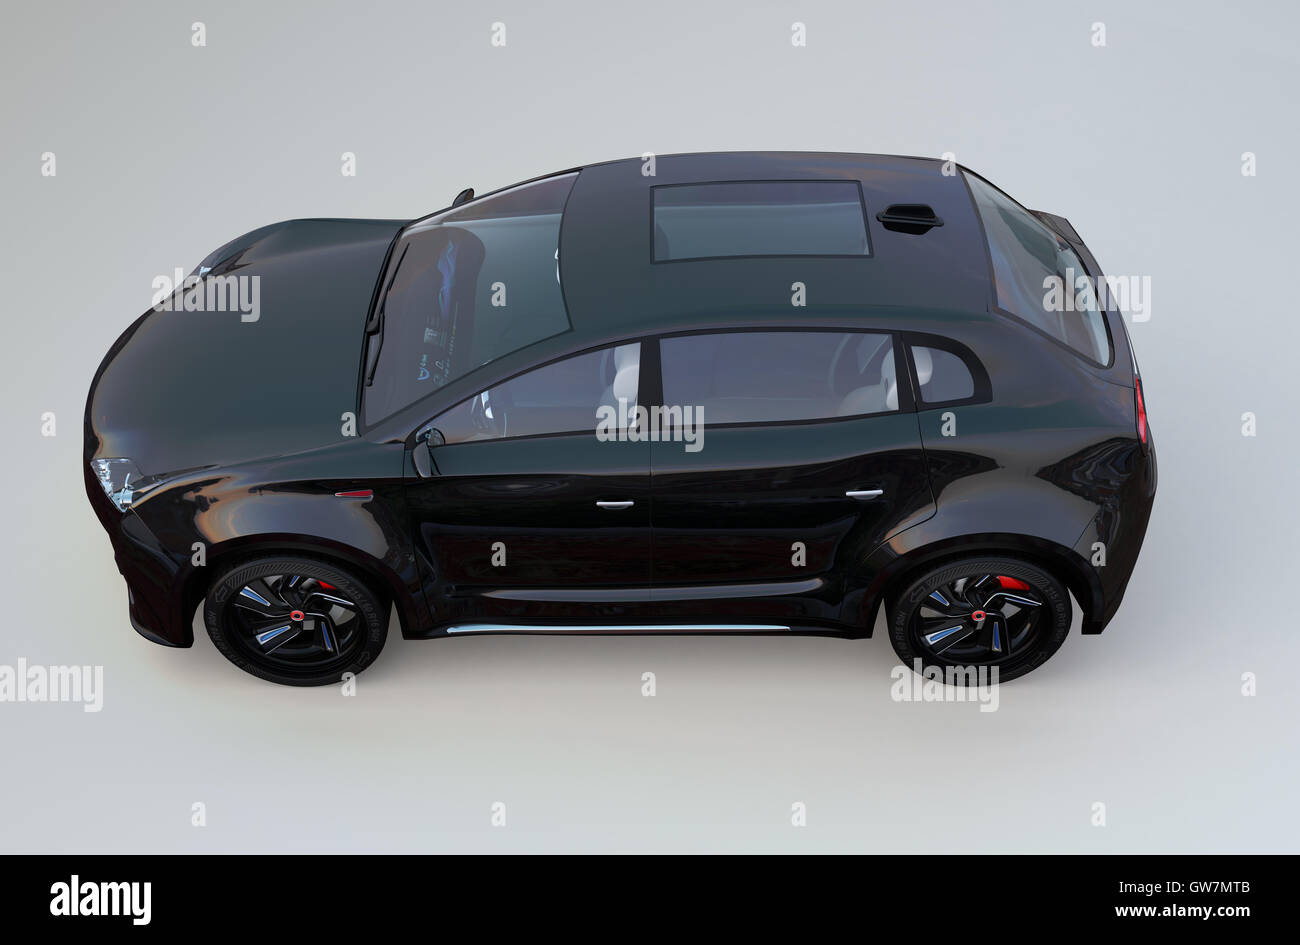 SUV elettrico concept car isolato su sfondo grigio. 3D rendering immagine con percorso di clipping. Foto Stock